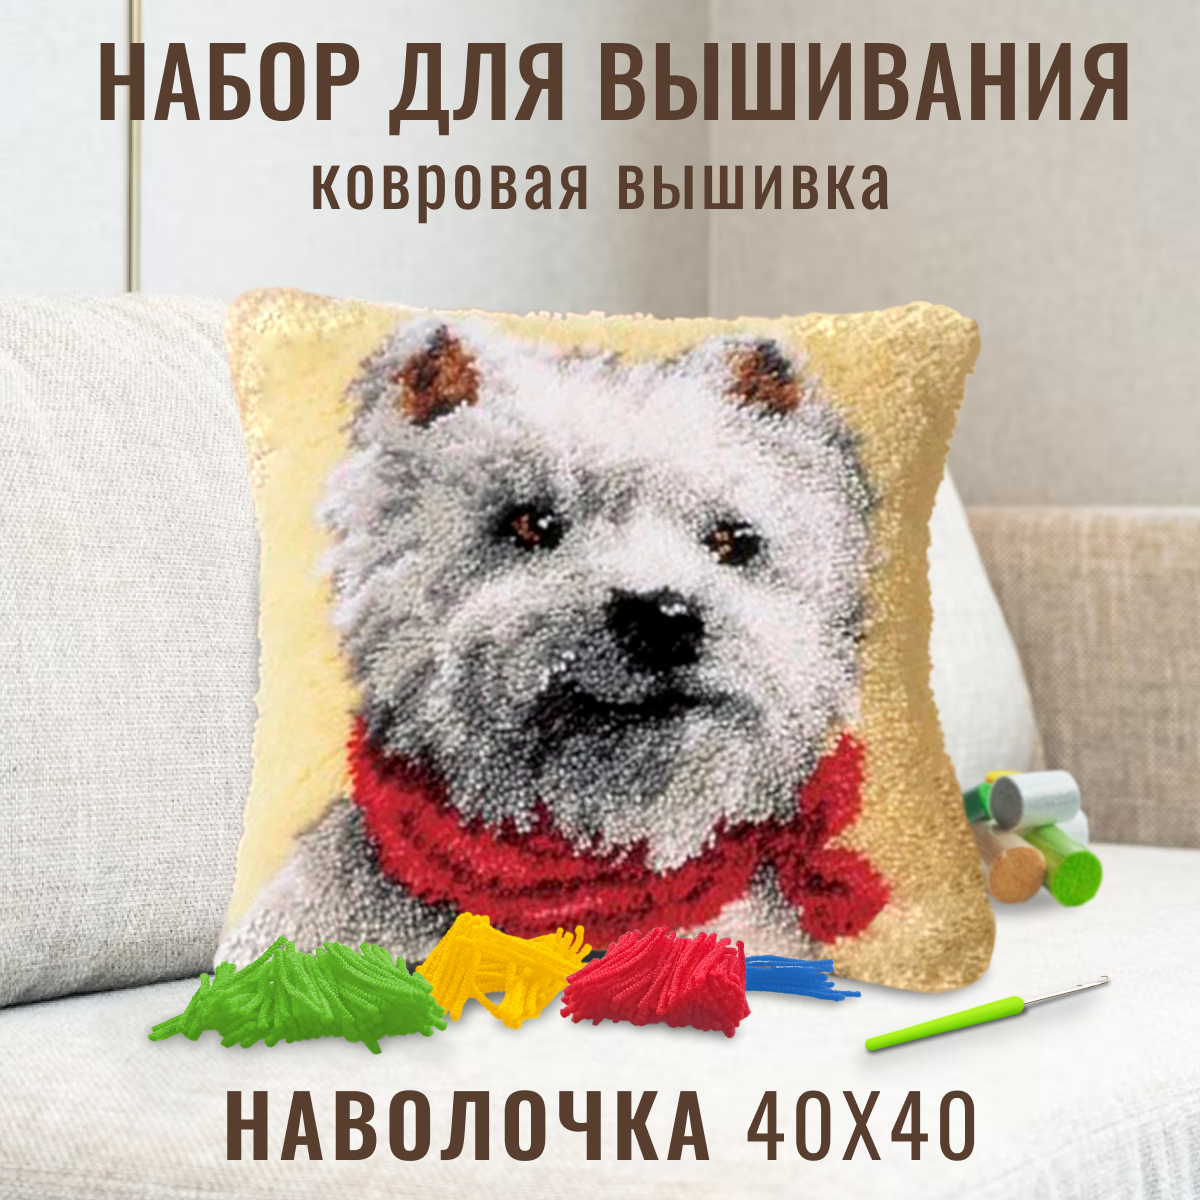 Ковровая вышивка. Набор для вышивания подушка размером 40х40 (ковровая техника) ZD-1024 Белая собака